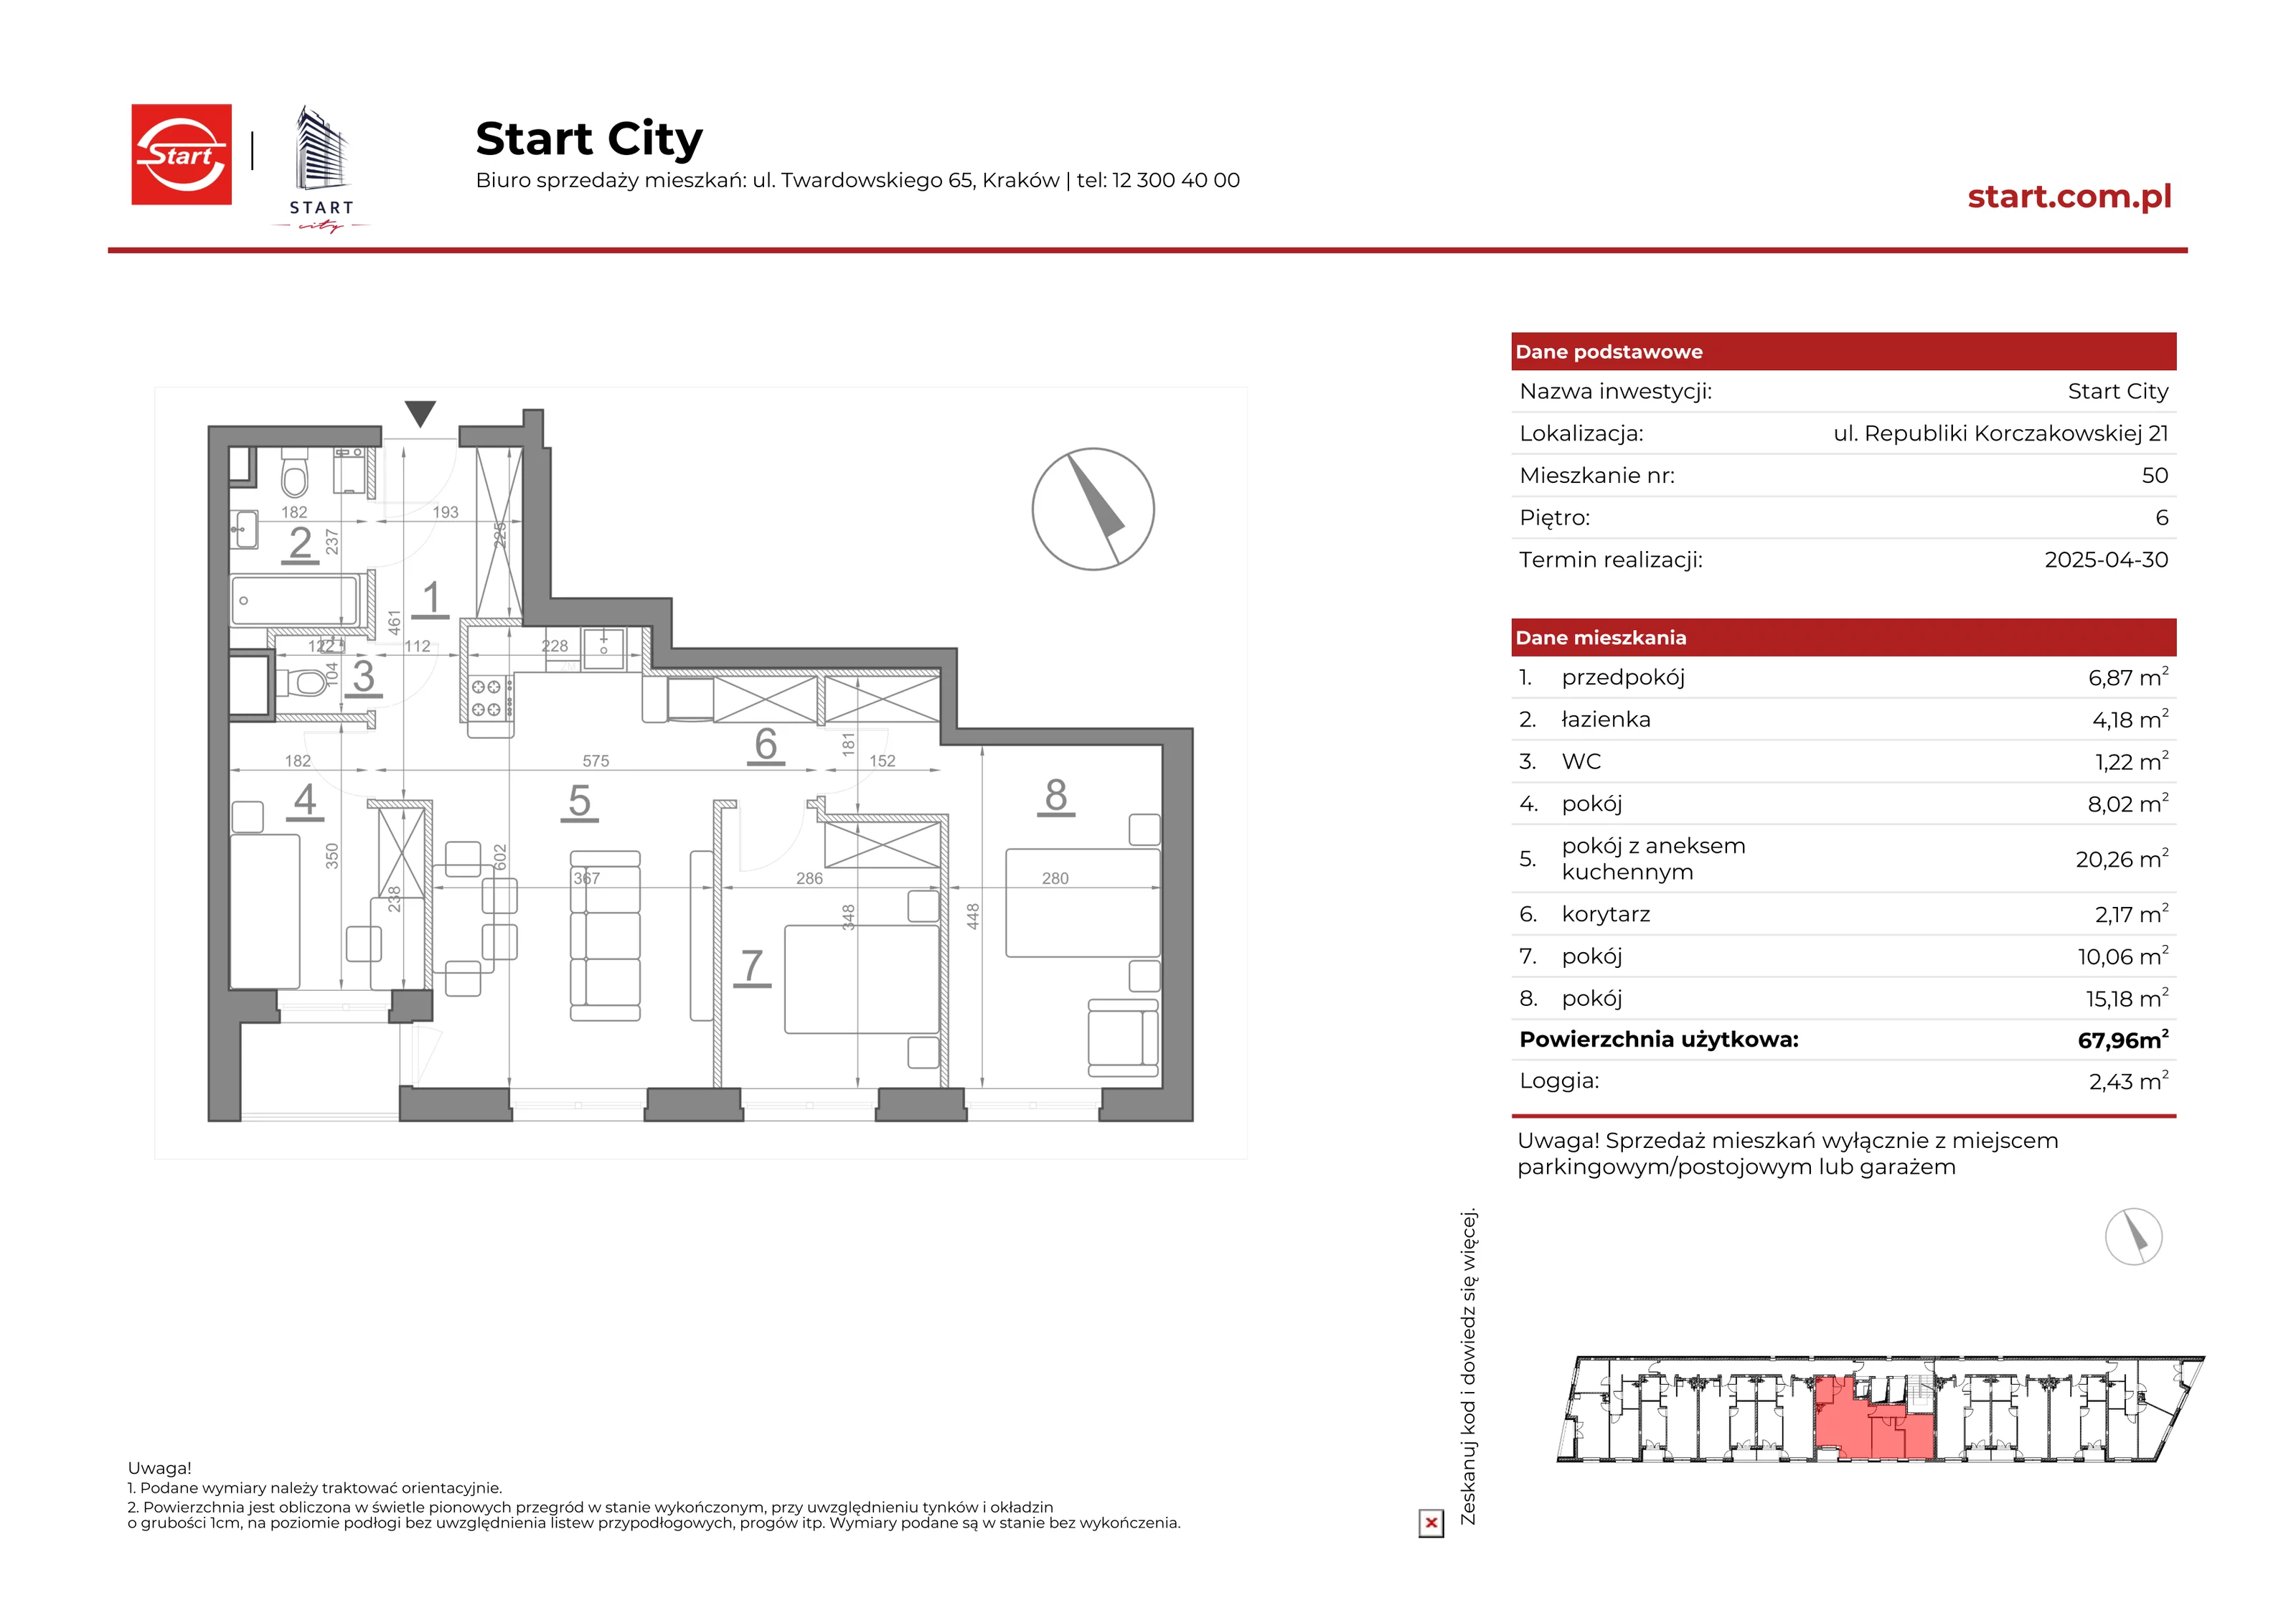 Mieszkanie 67,96 m², piętro 6, oferta nr 21/50, Start City, Kraków, Bieżanów-Prokocim, ul. Republiki Korczakowskiej 21